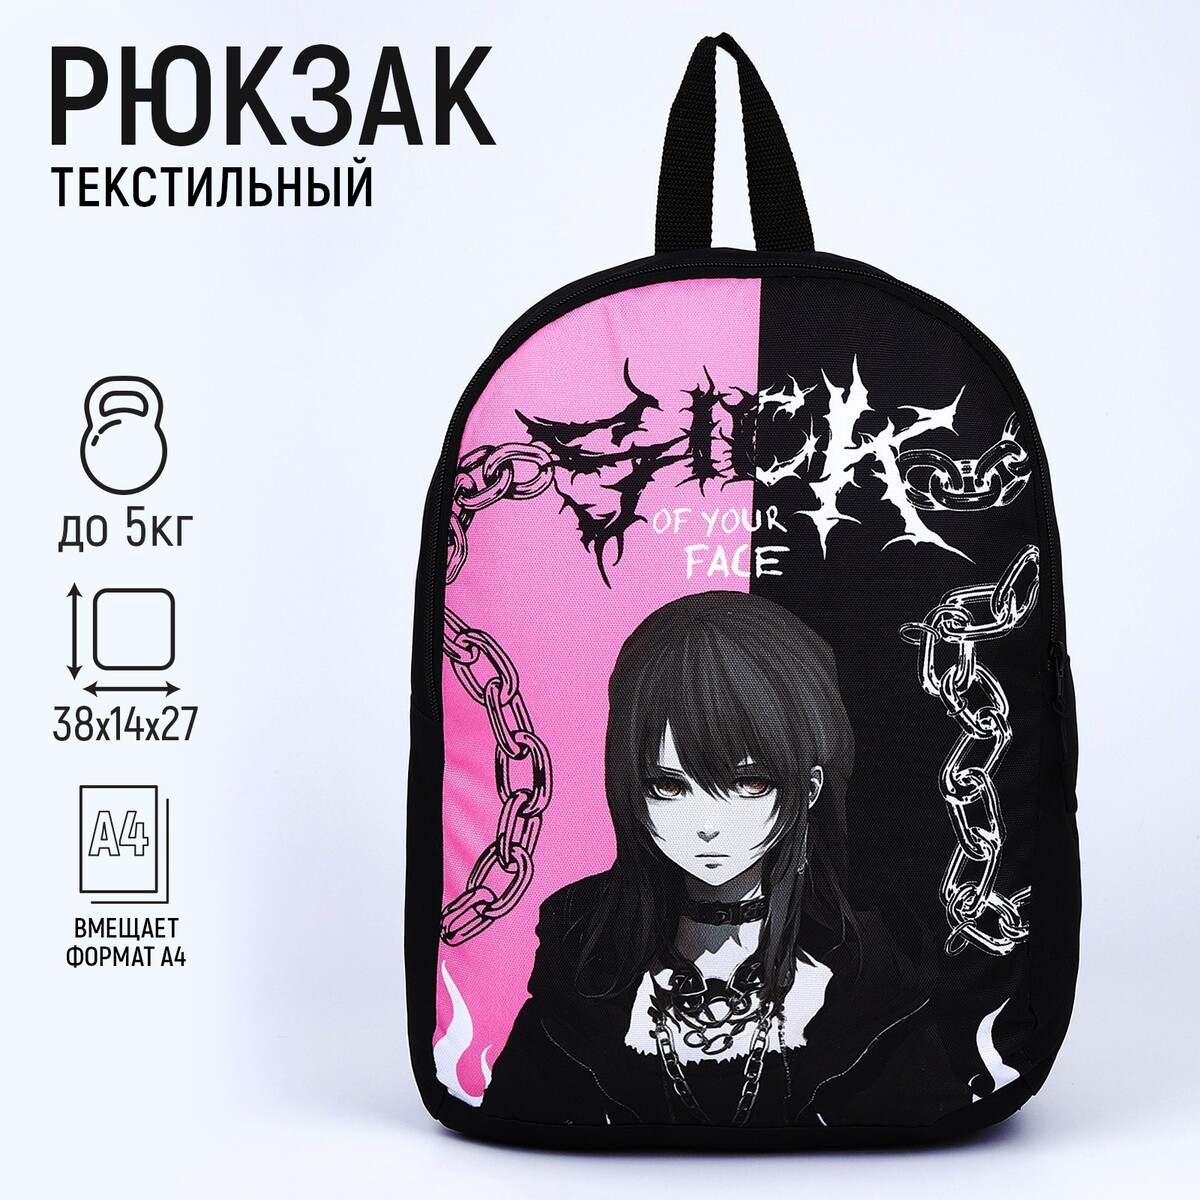 Рюкзак текстильный аниме, 38х14х27 см, цвет черный, розовый рюкзак текстильный котики 38х14х27 см